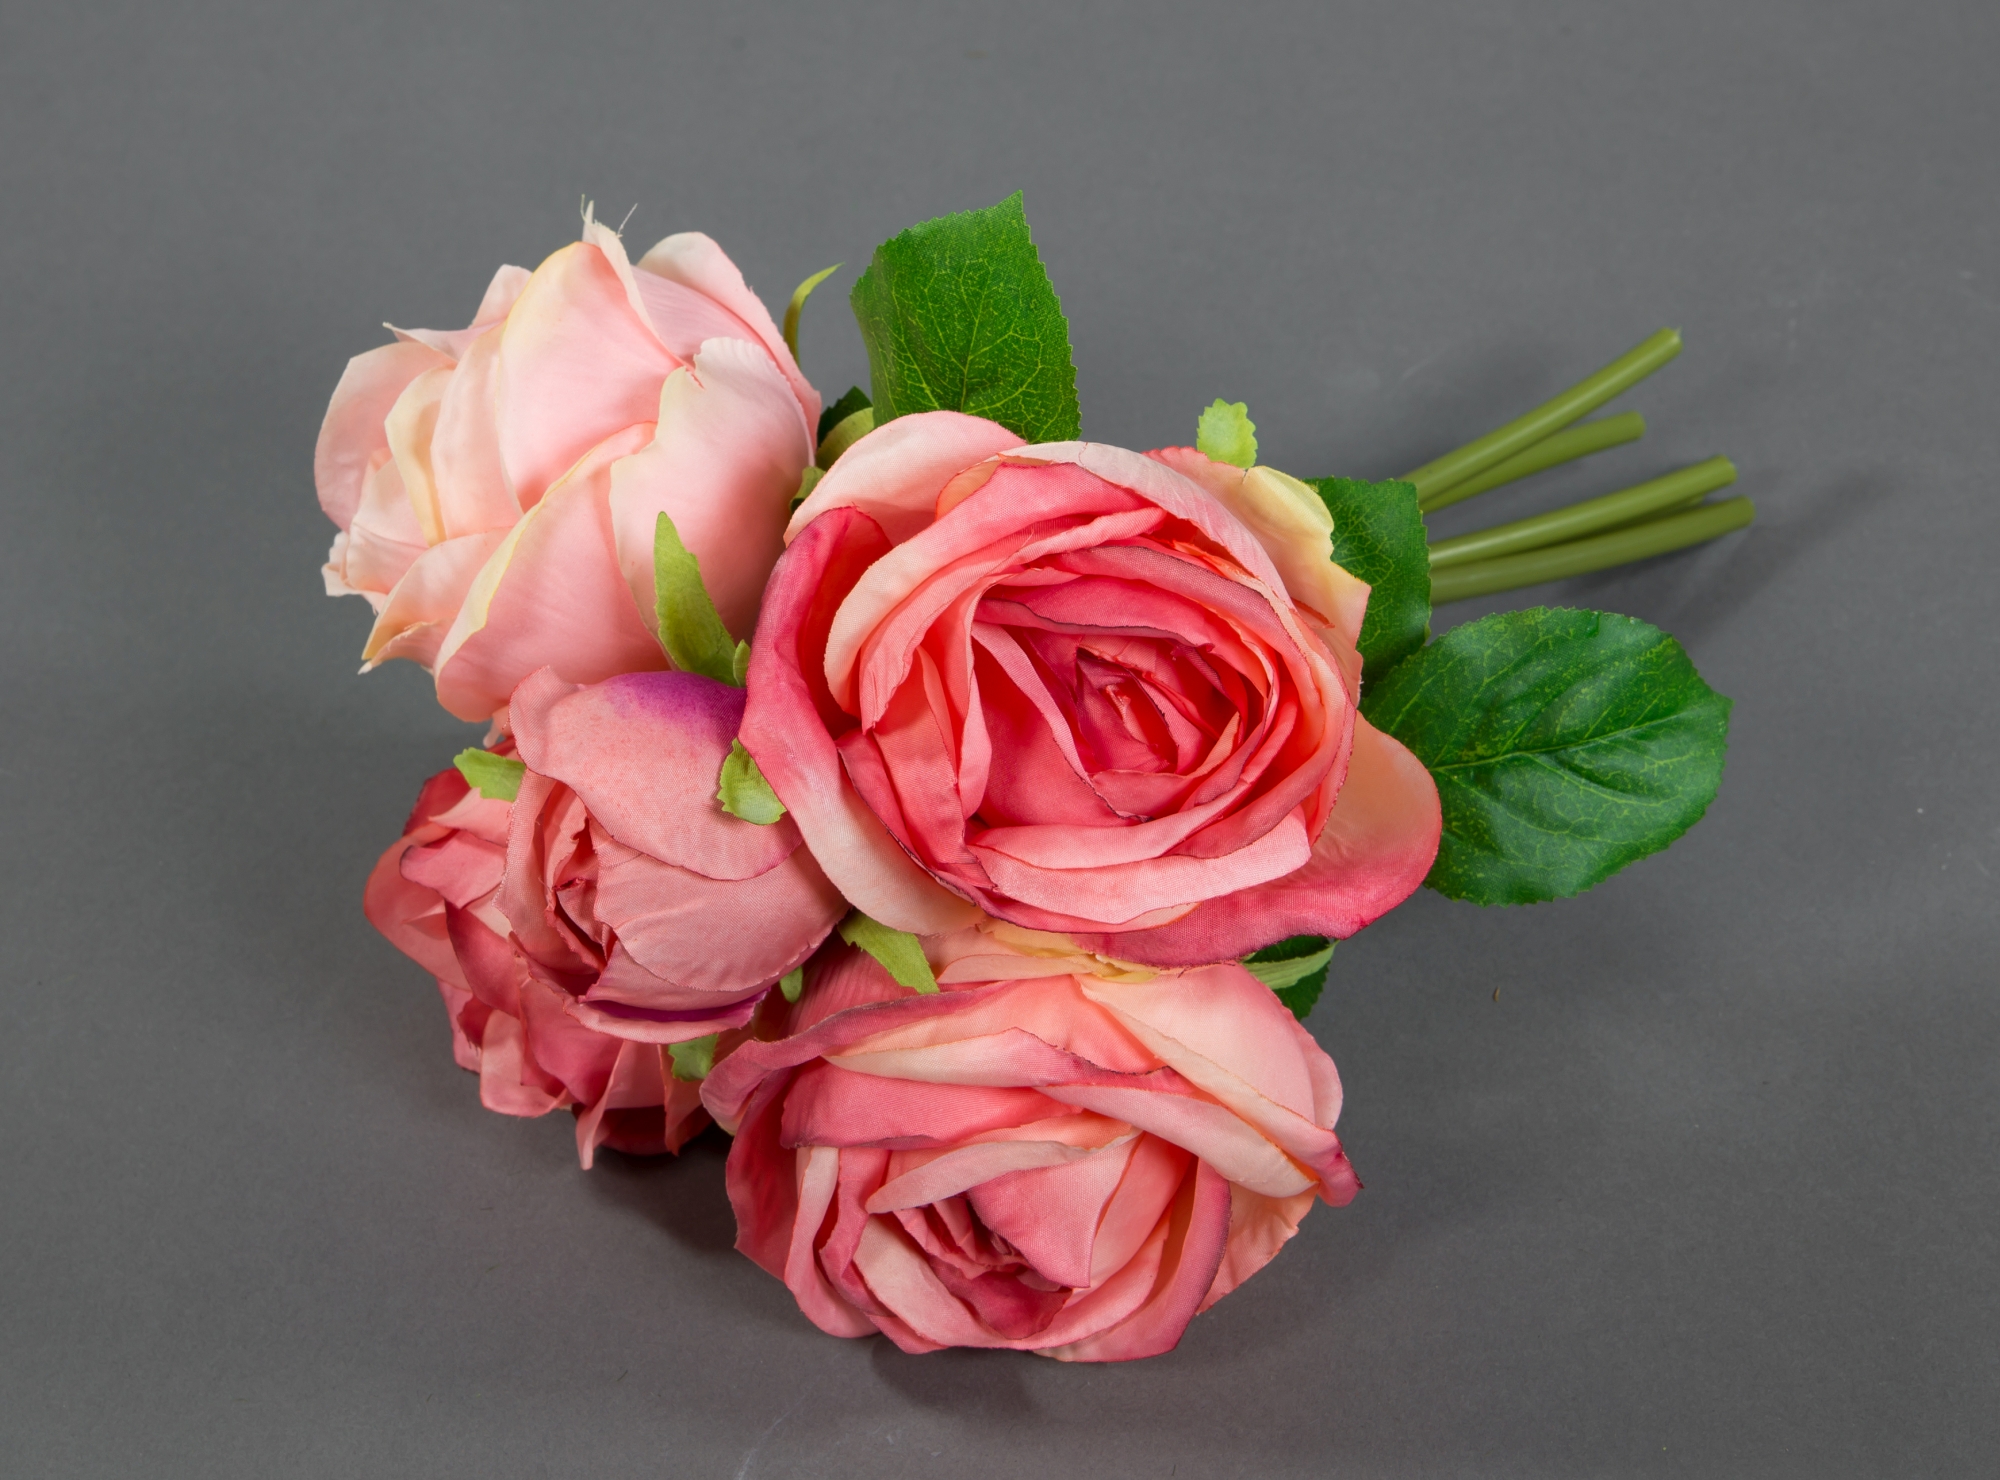 Rosenstrauß 28x20cm FT Blumen Strauß Rosen rosa-pink Kunstblumen Blumenstrauß künstliche